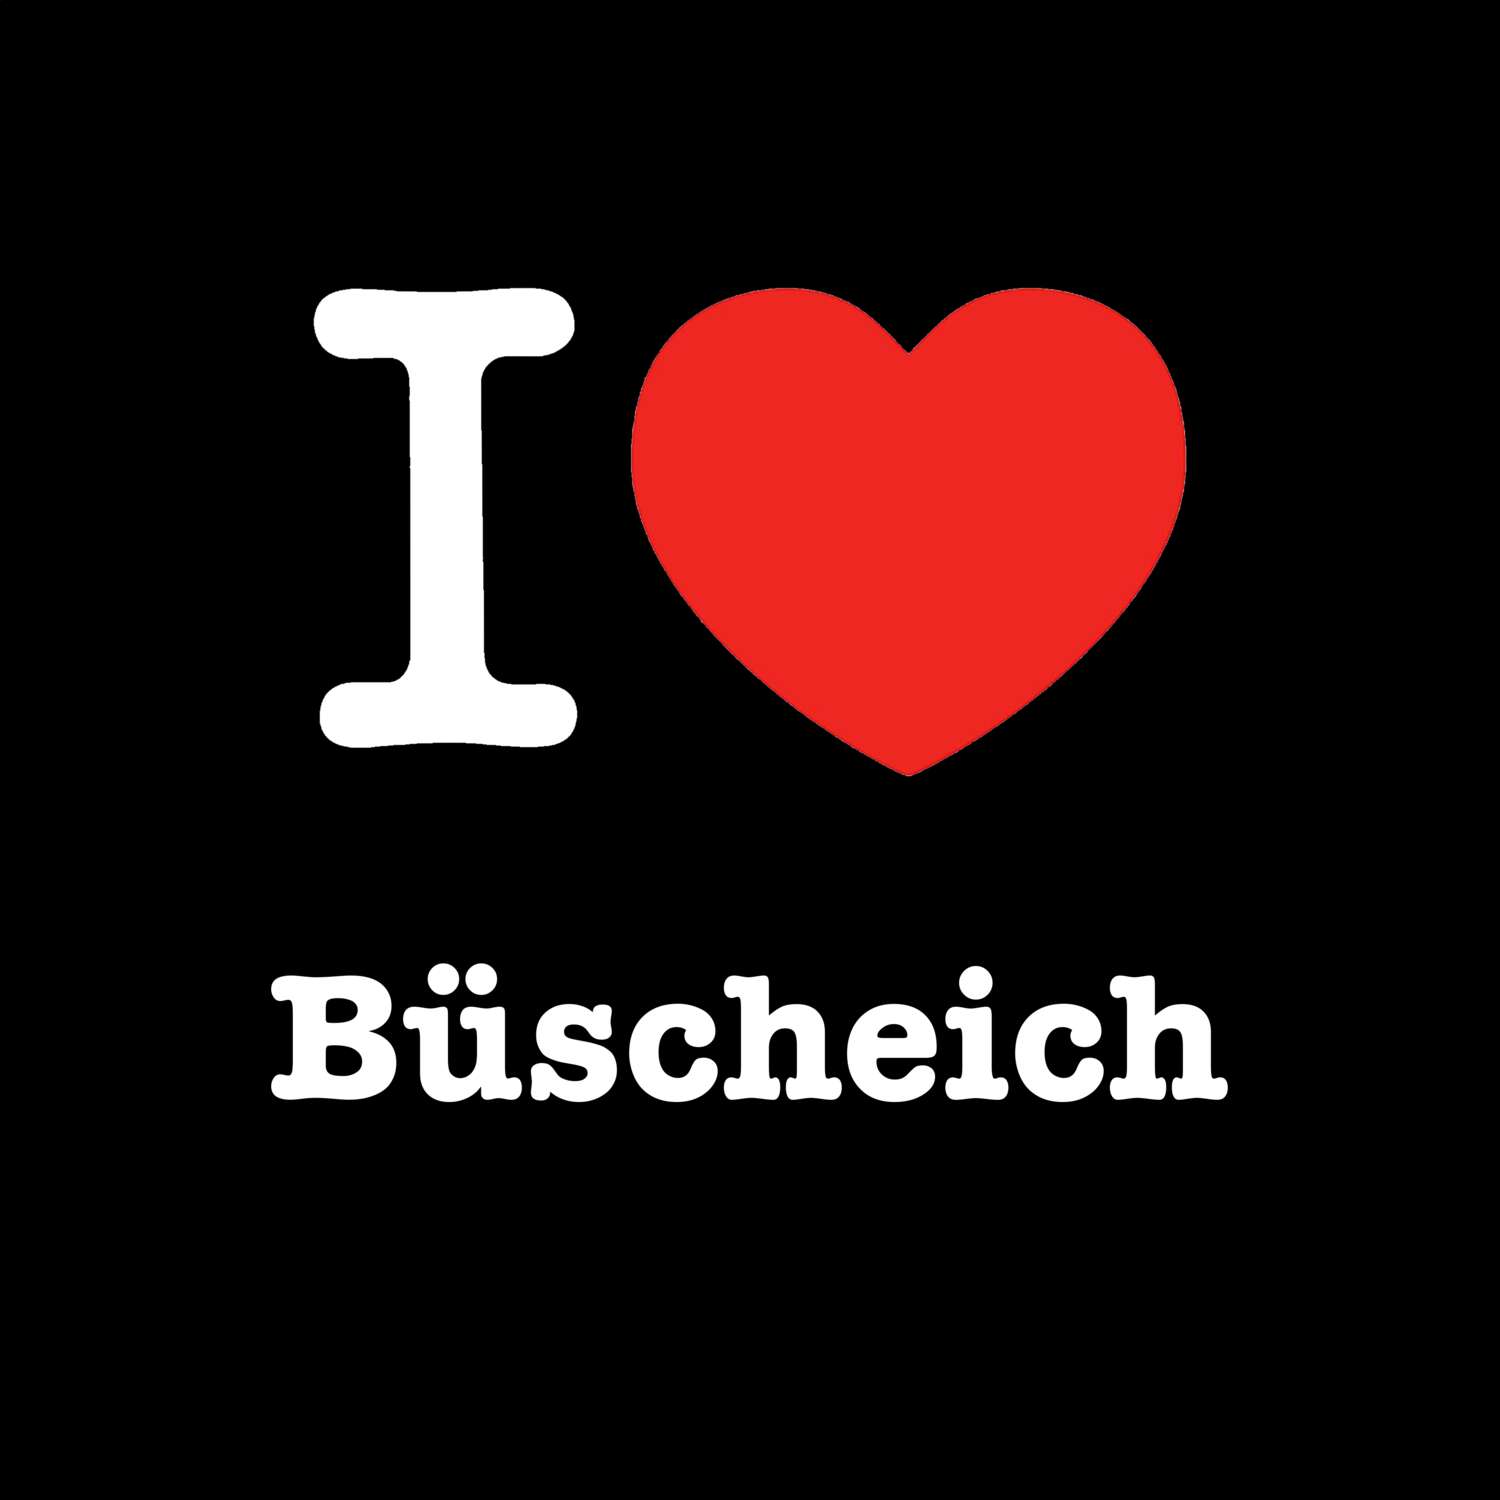 Büscheich T-Shirt »I love«